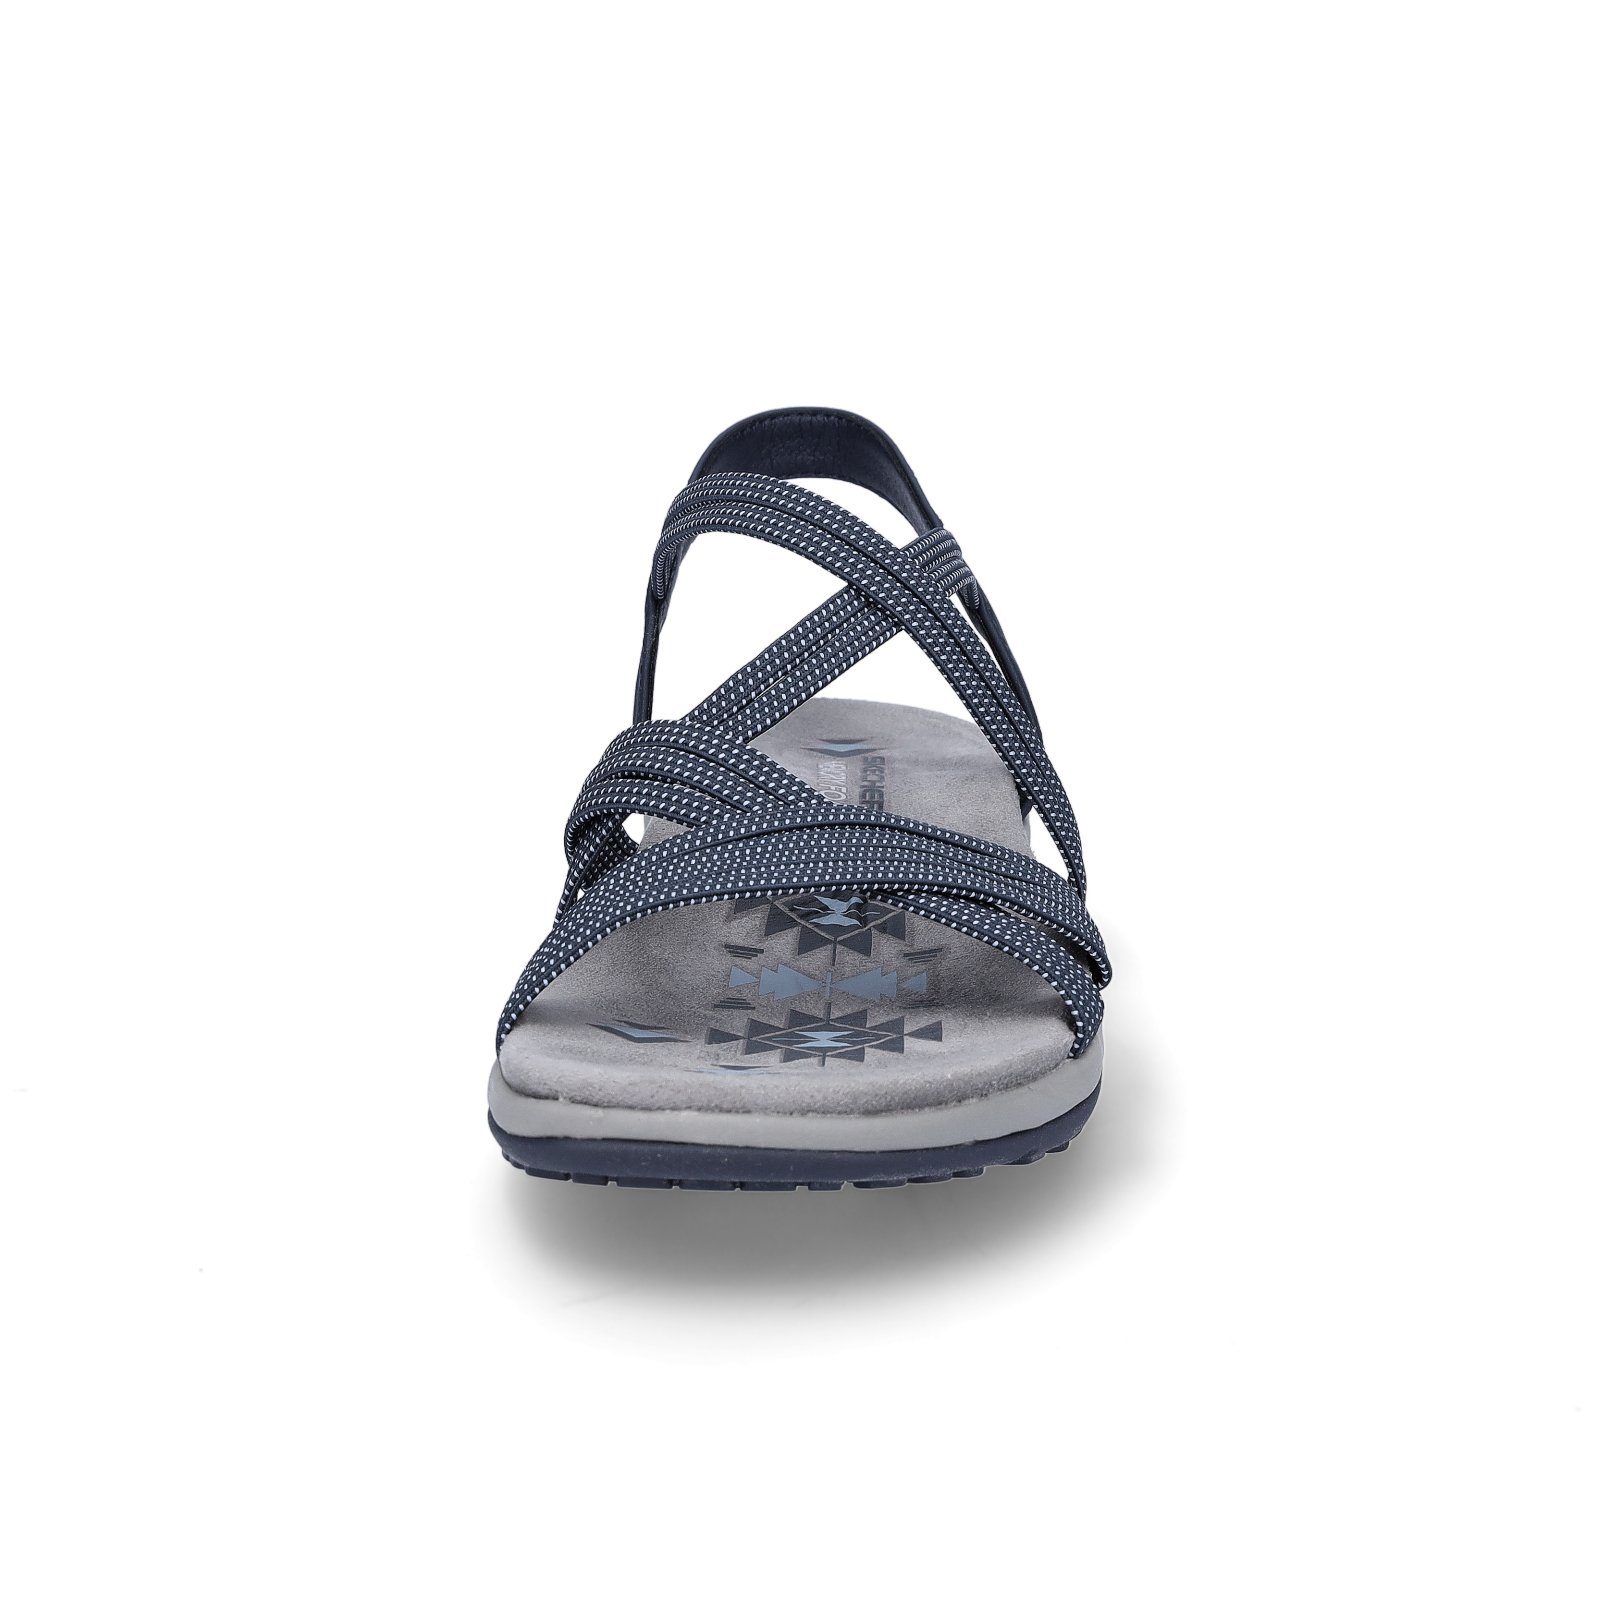 Skechers Skechers Damen Sandale marine Slim (20202745) Reggae Sandale blau Blau